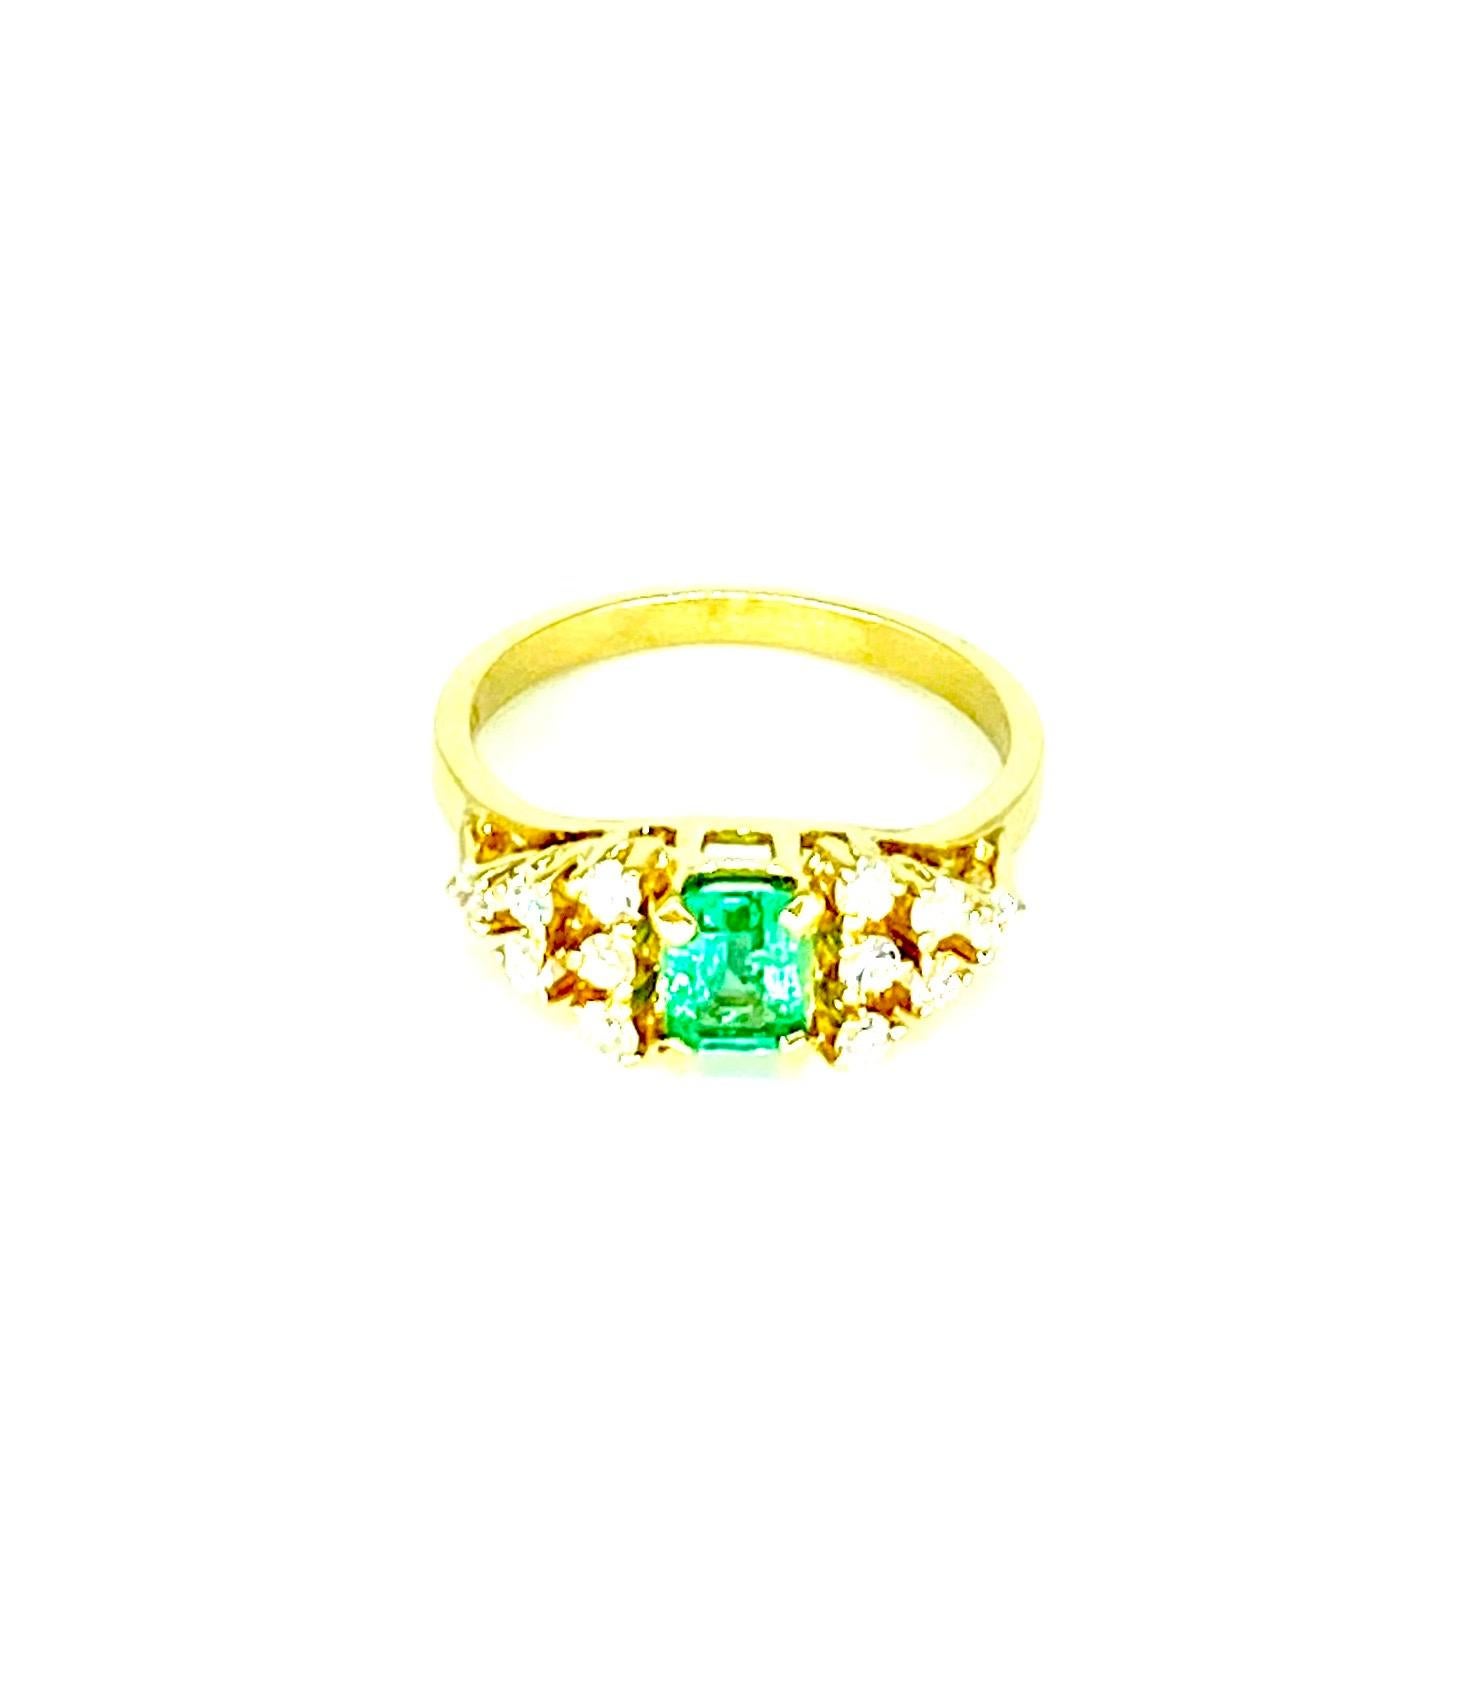 Vintage 1.60 Carat Emerald and Diamonds Cocktail Cluster Ring 18k Gold. Magnifique bague au design brillant. Les diamants pèsent environ 0,60 carat et l'émeraude environ 1 carat. Ce design vintage est le fruit d'un superbe travail artisanal. La